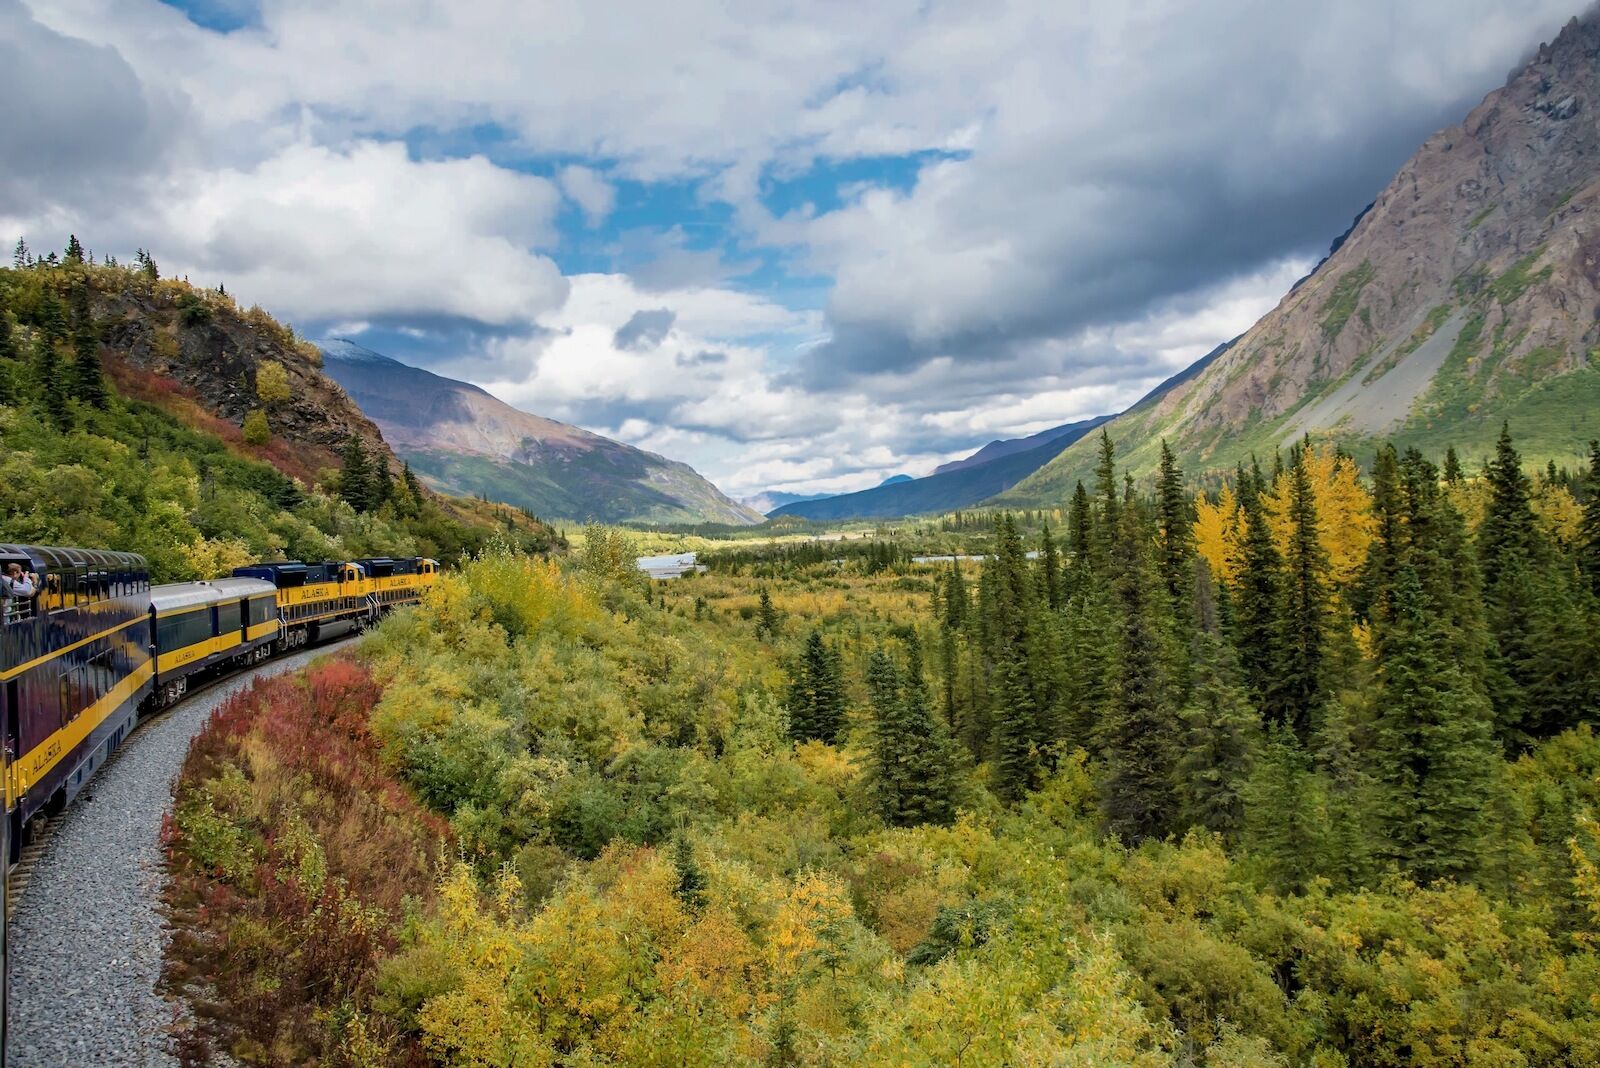 Train from the Alaska Railroad